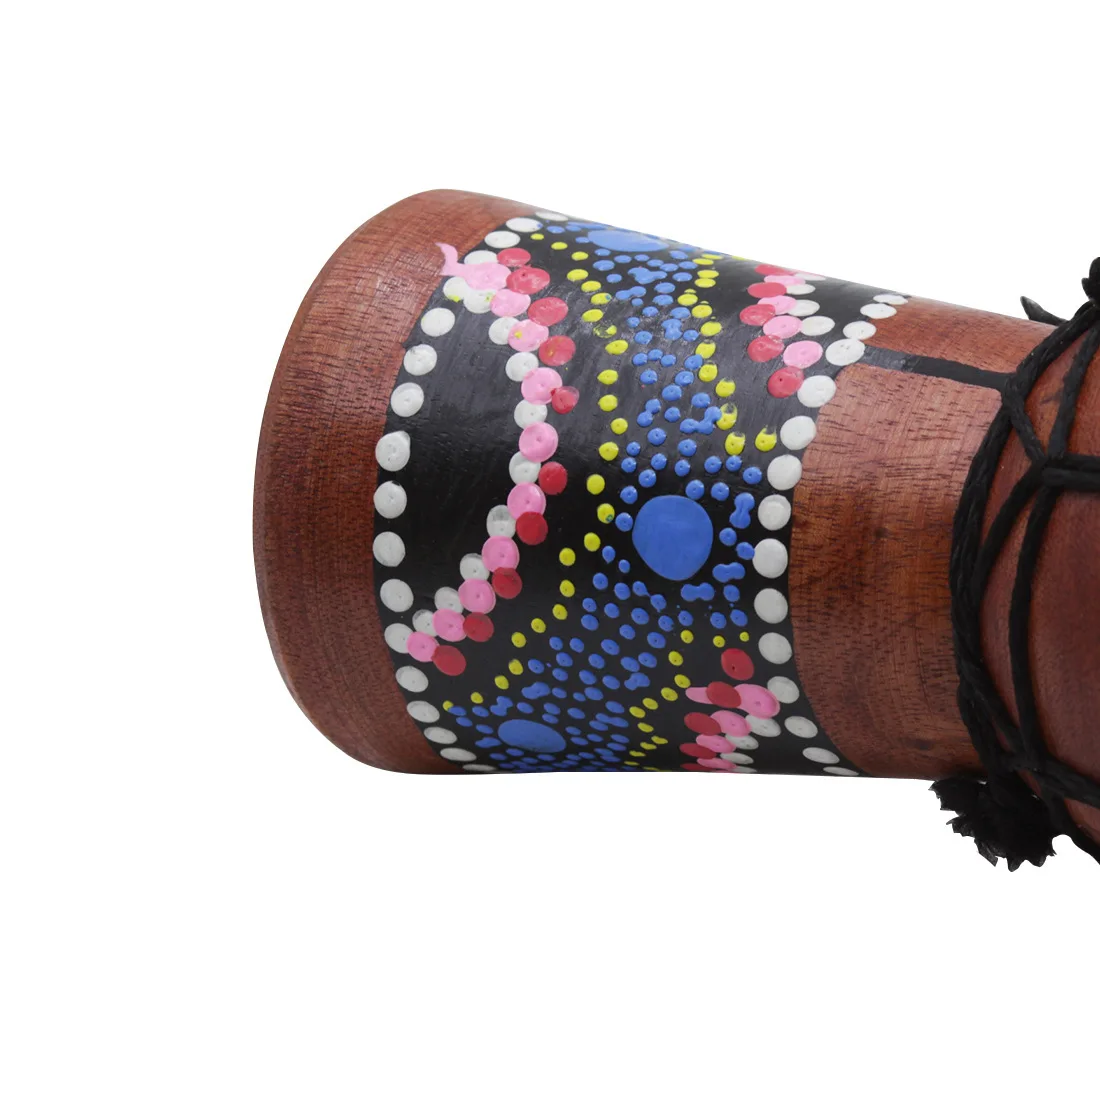 ИРИН 1 дюймов шт. 4 дюймов Professional джембе Африканский барабаны Бонго дерево хороший звук музыкальный инструмент